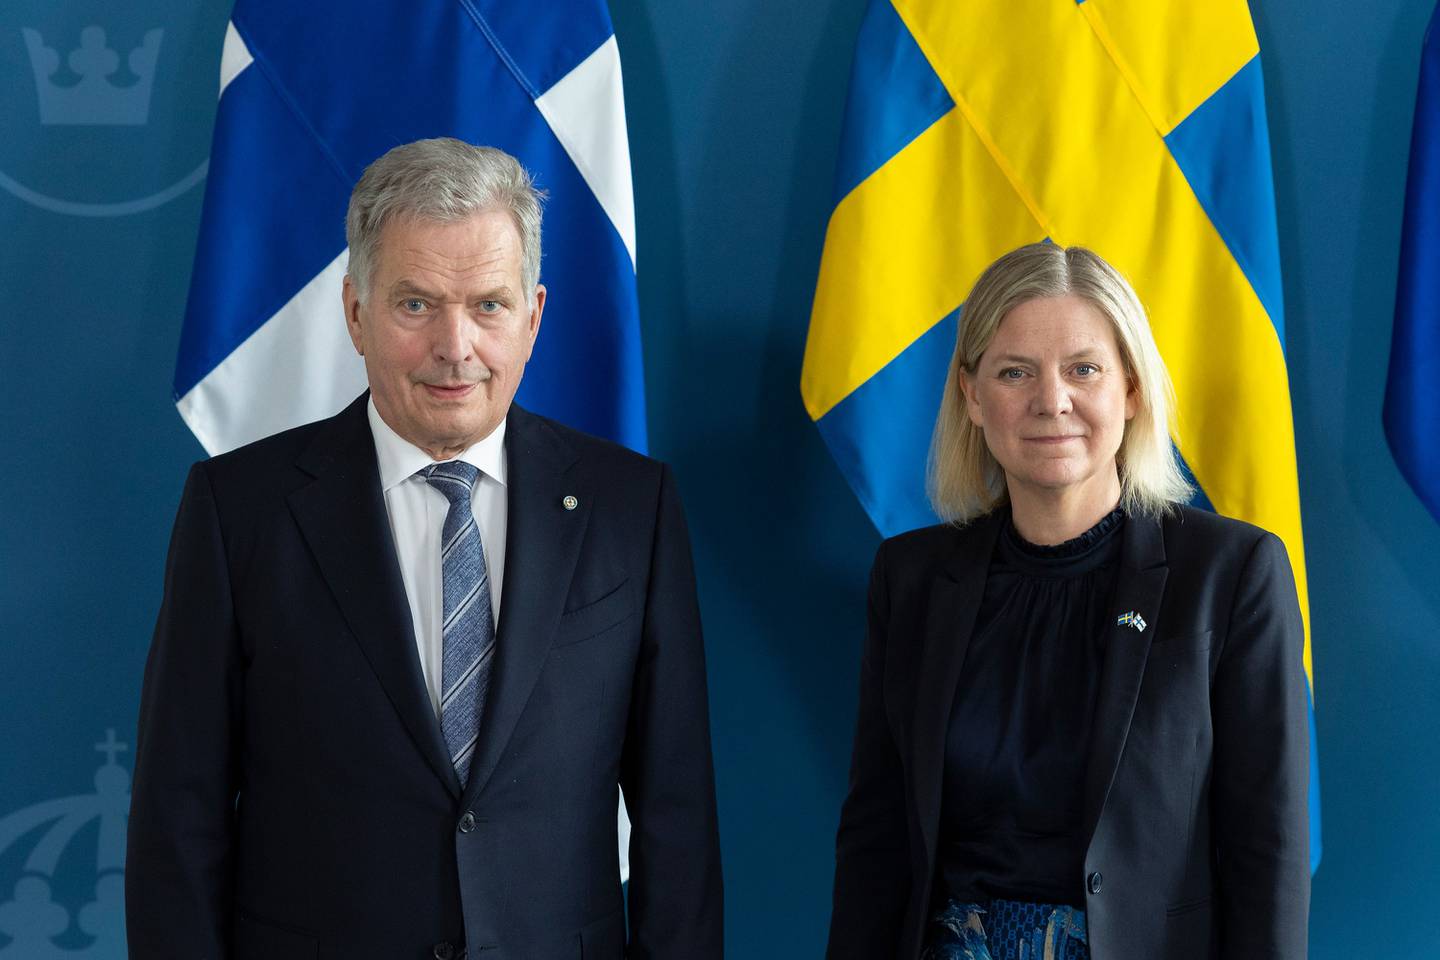 El presidente de Finlandia, Sauli Niinisto, posa para una foto con la primera ministra sueca Magdalena Andersson en el Palacio Adelcrantz el 17 de mayo de 2022 en Estocolmo, Suecia.